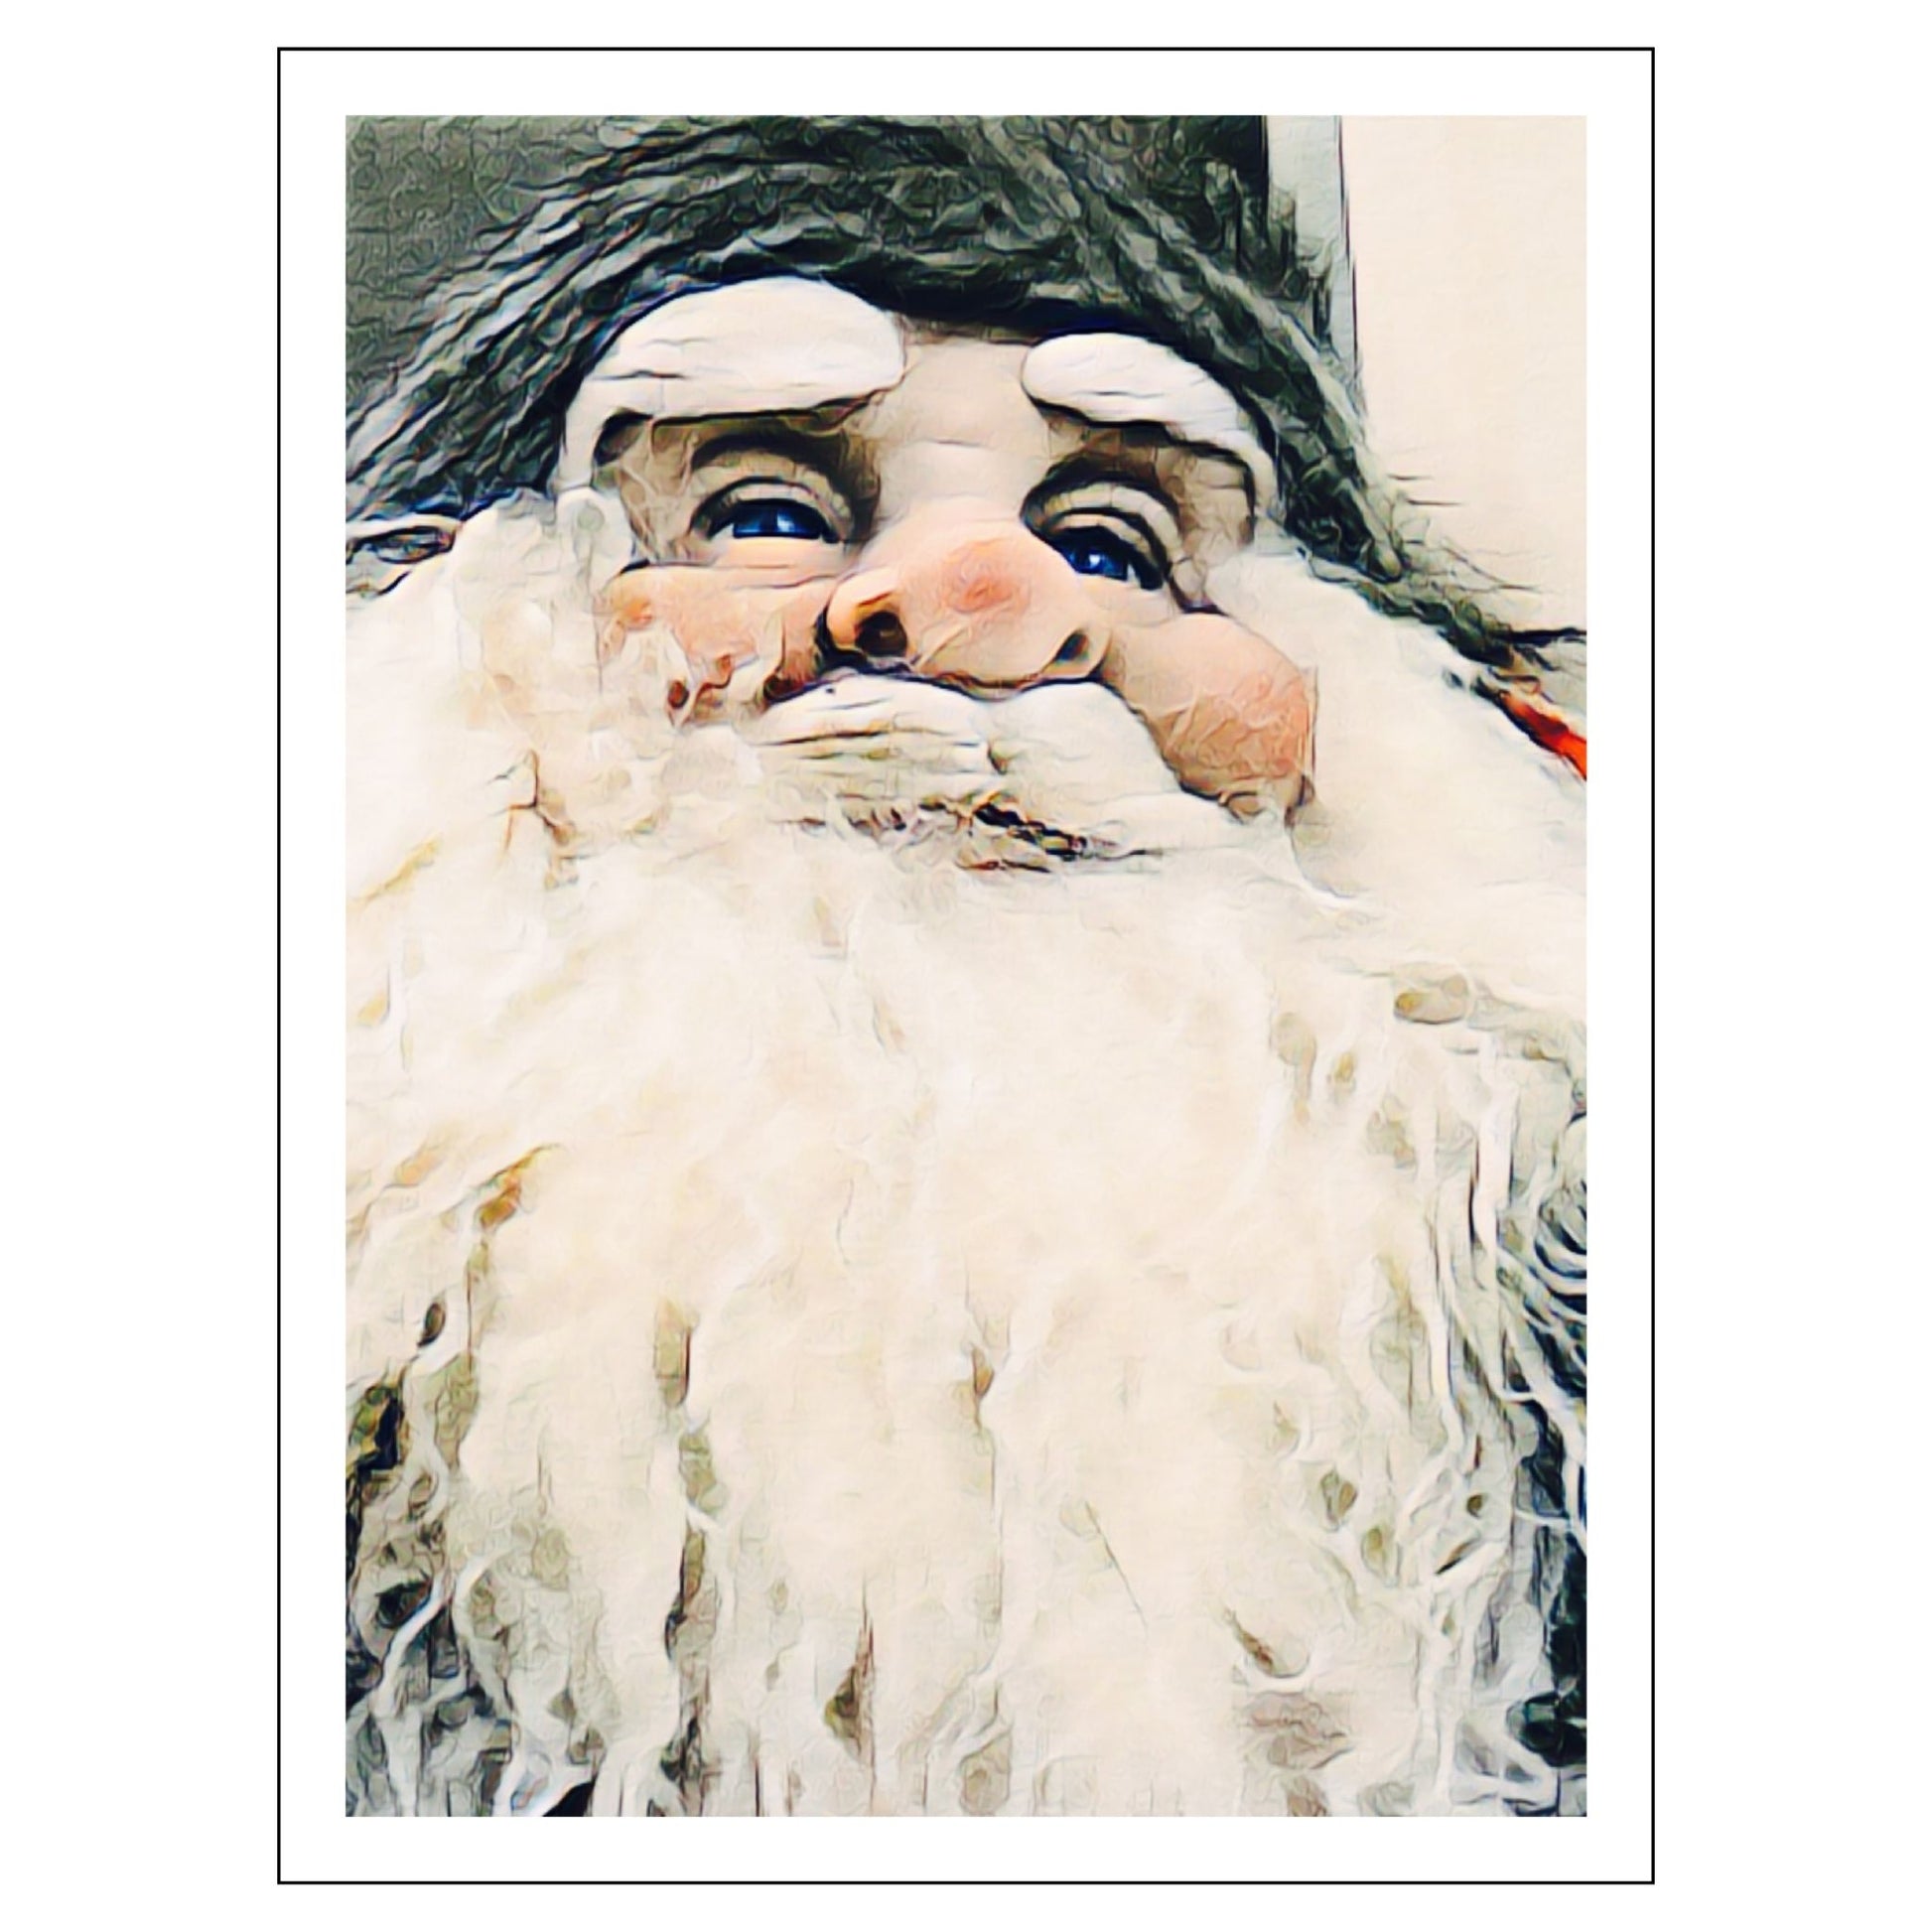 Grafisk julemotiv av ansiktet til en julenisse med stort, hvitt skjegg. Motivet trykkes på plakat og lerret.